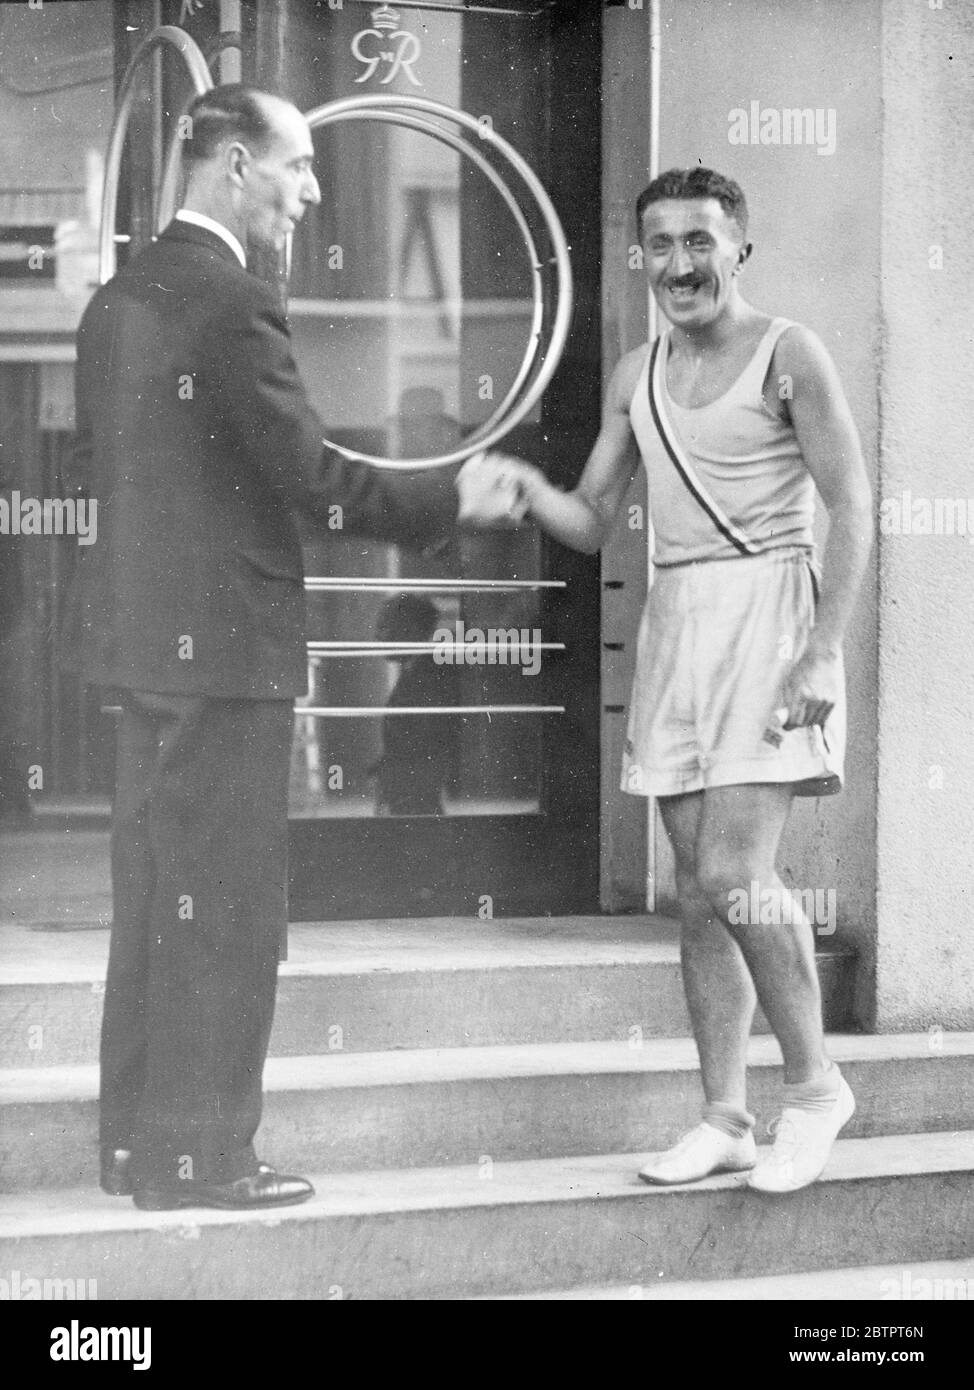 L'athlète anglais termine la course à travers la Manche. M. Kenneth Bailey, l'athlète de Bournemouth, a atteint le pavillon britannique à l'exposition de Paris. Après avoir parcouru la Manche de Bournemouth à Southampton, puis à travers la France. Bailey, a embarqué à bord de la « Reine Mary » à Southampton et a couru autour des ponts du paquebot pendant qu'elle traversait la Manche. Des expositions de photos, M. Kenneth Bailey, ont été accueillies à l'arrivée au pavillon britannique à l'exposition de Paris. 14 novembre 1937 Banque D'Images